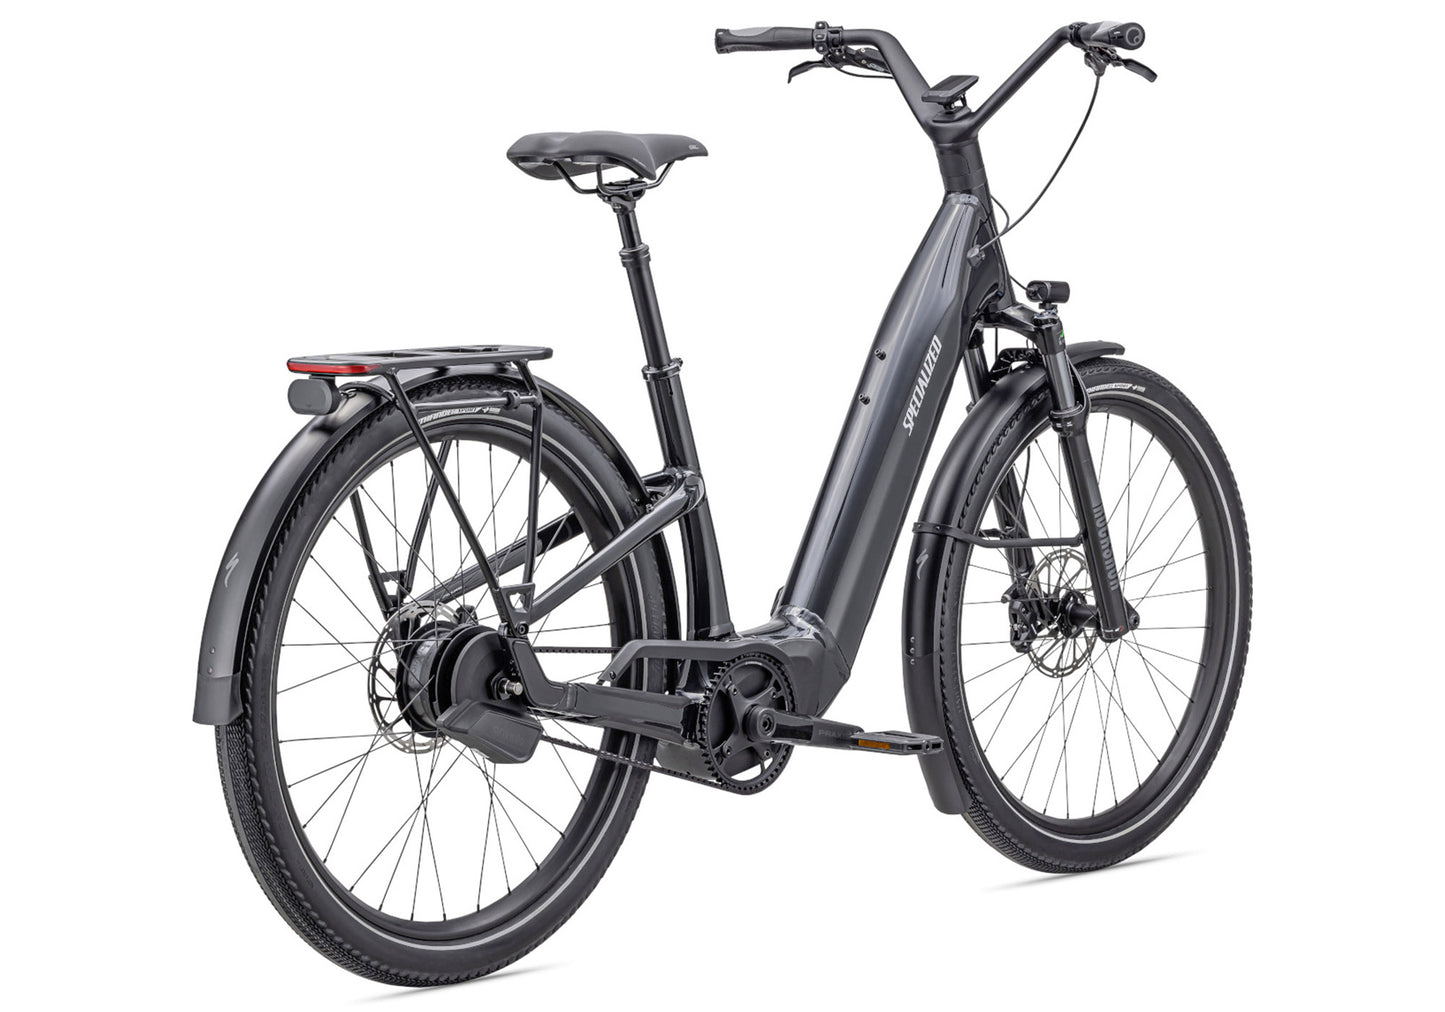 Specialized Turbo Como 5.0 Internally Geared Unisex Electric Urban Bike - Cast Black